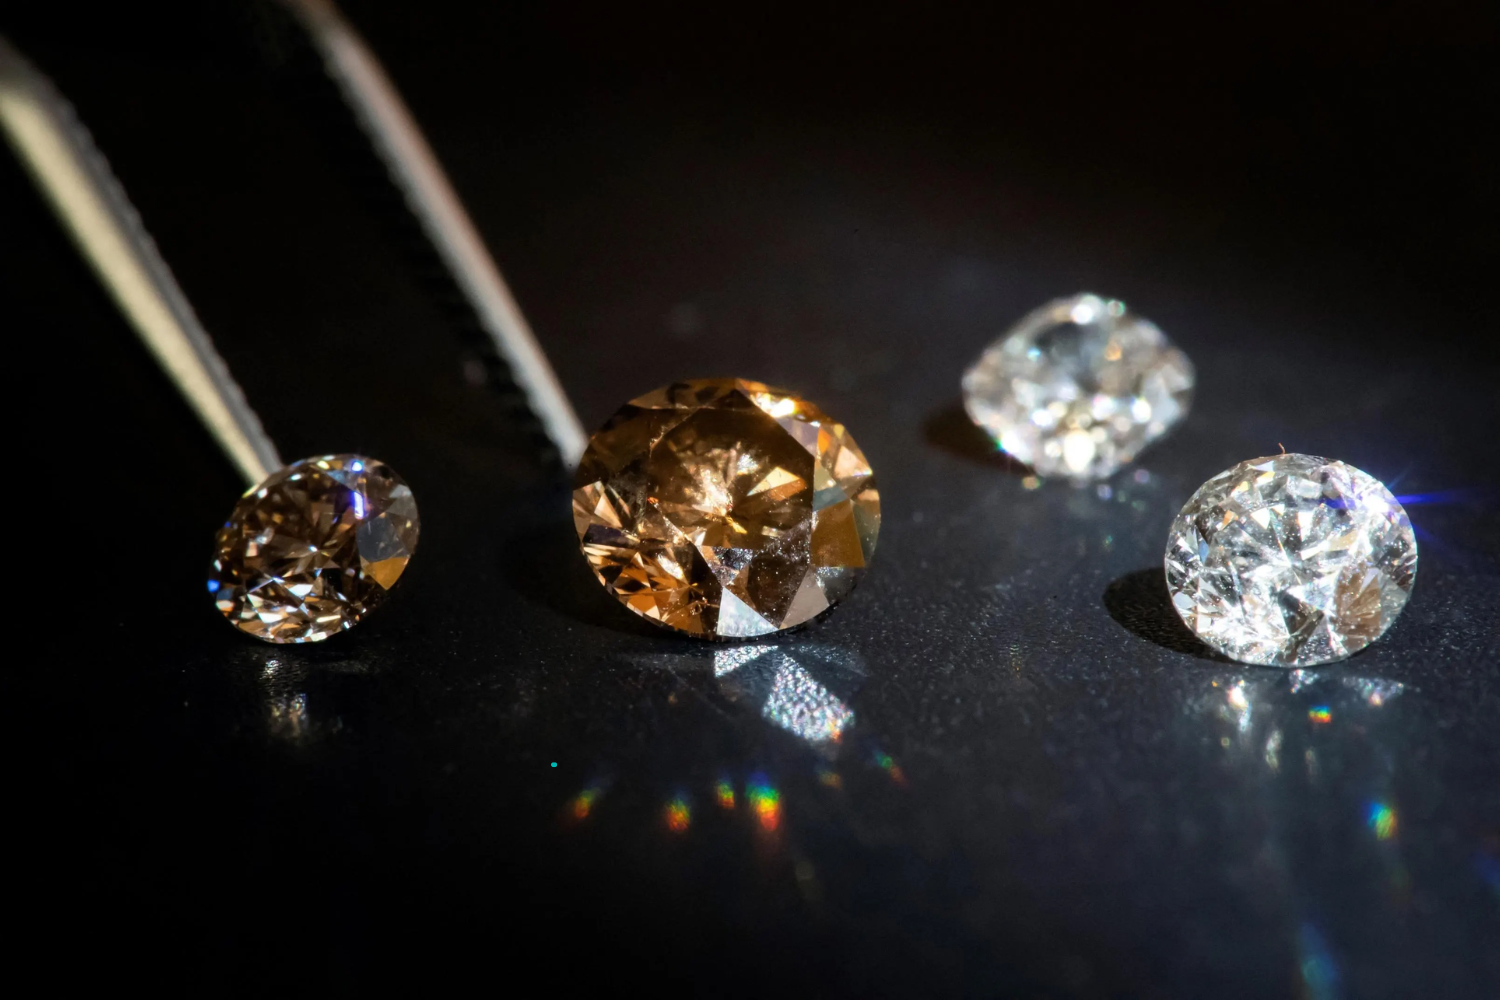 diamantes de laboratório são a aposta da maior fabricante de joias do mundo